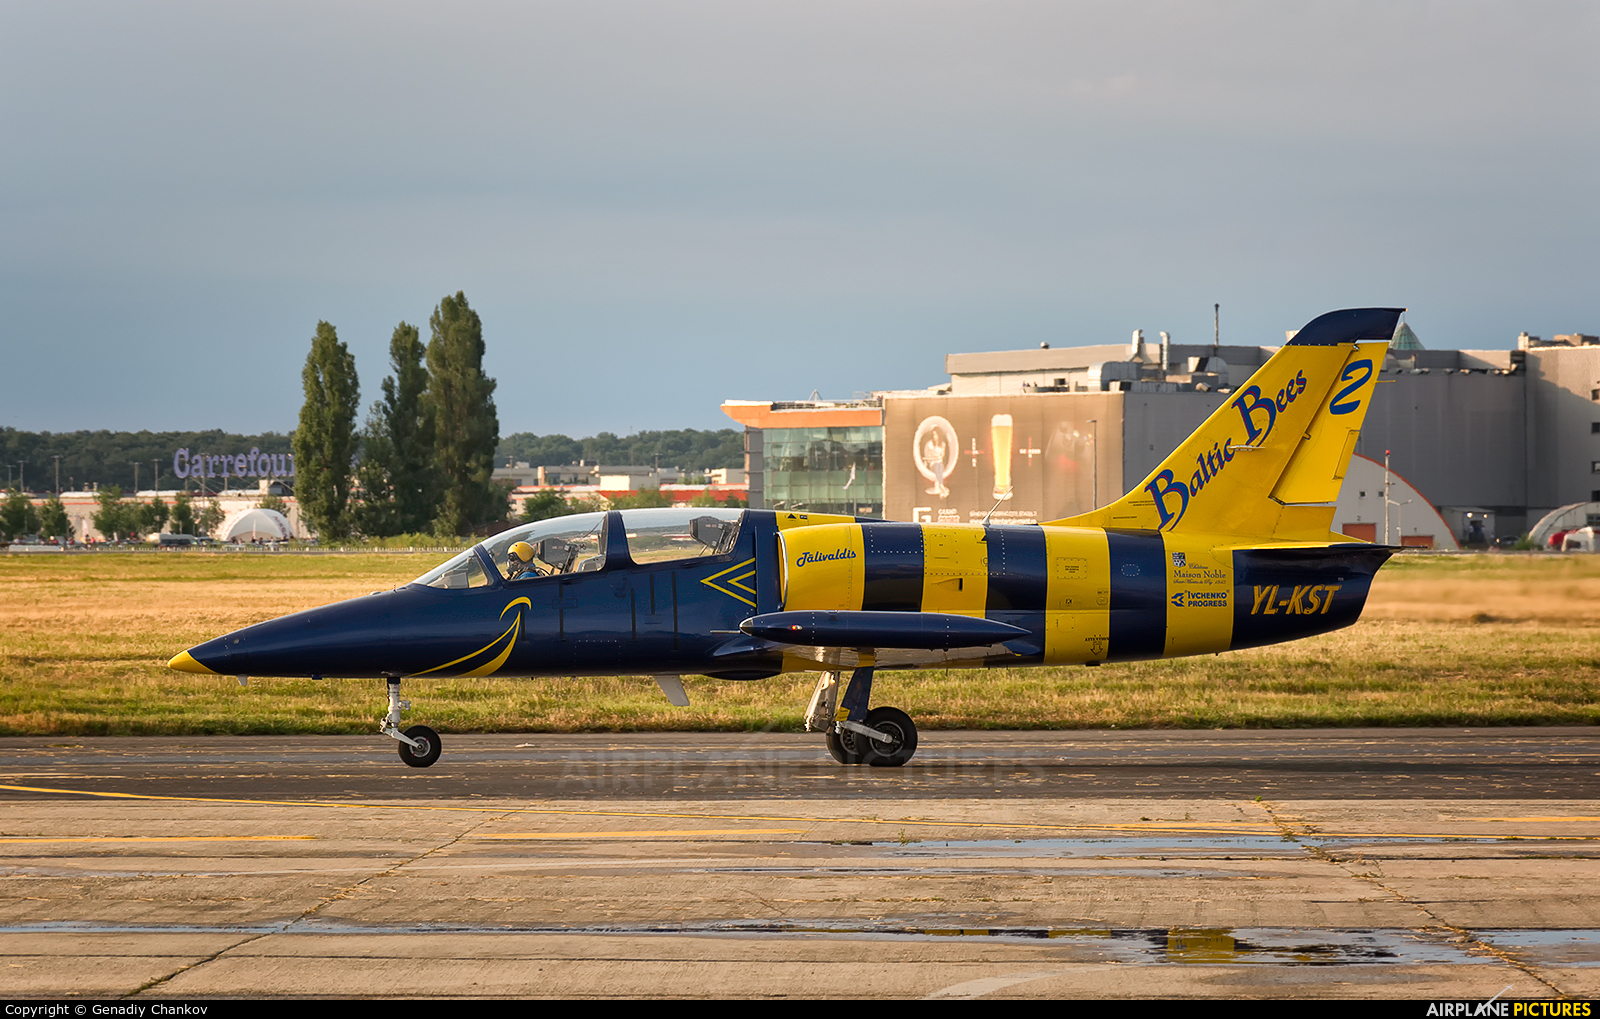 Baltic Bees Jet Team YL-KST aircraft at Bucharest - Aurel Vlaicu Intl